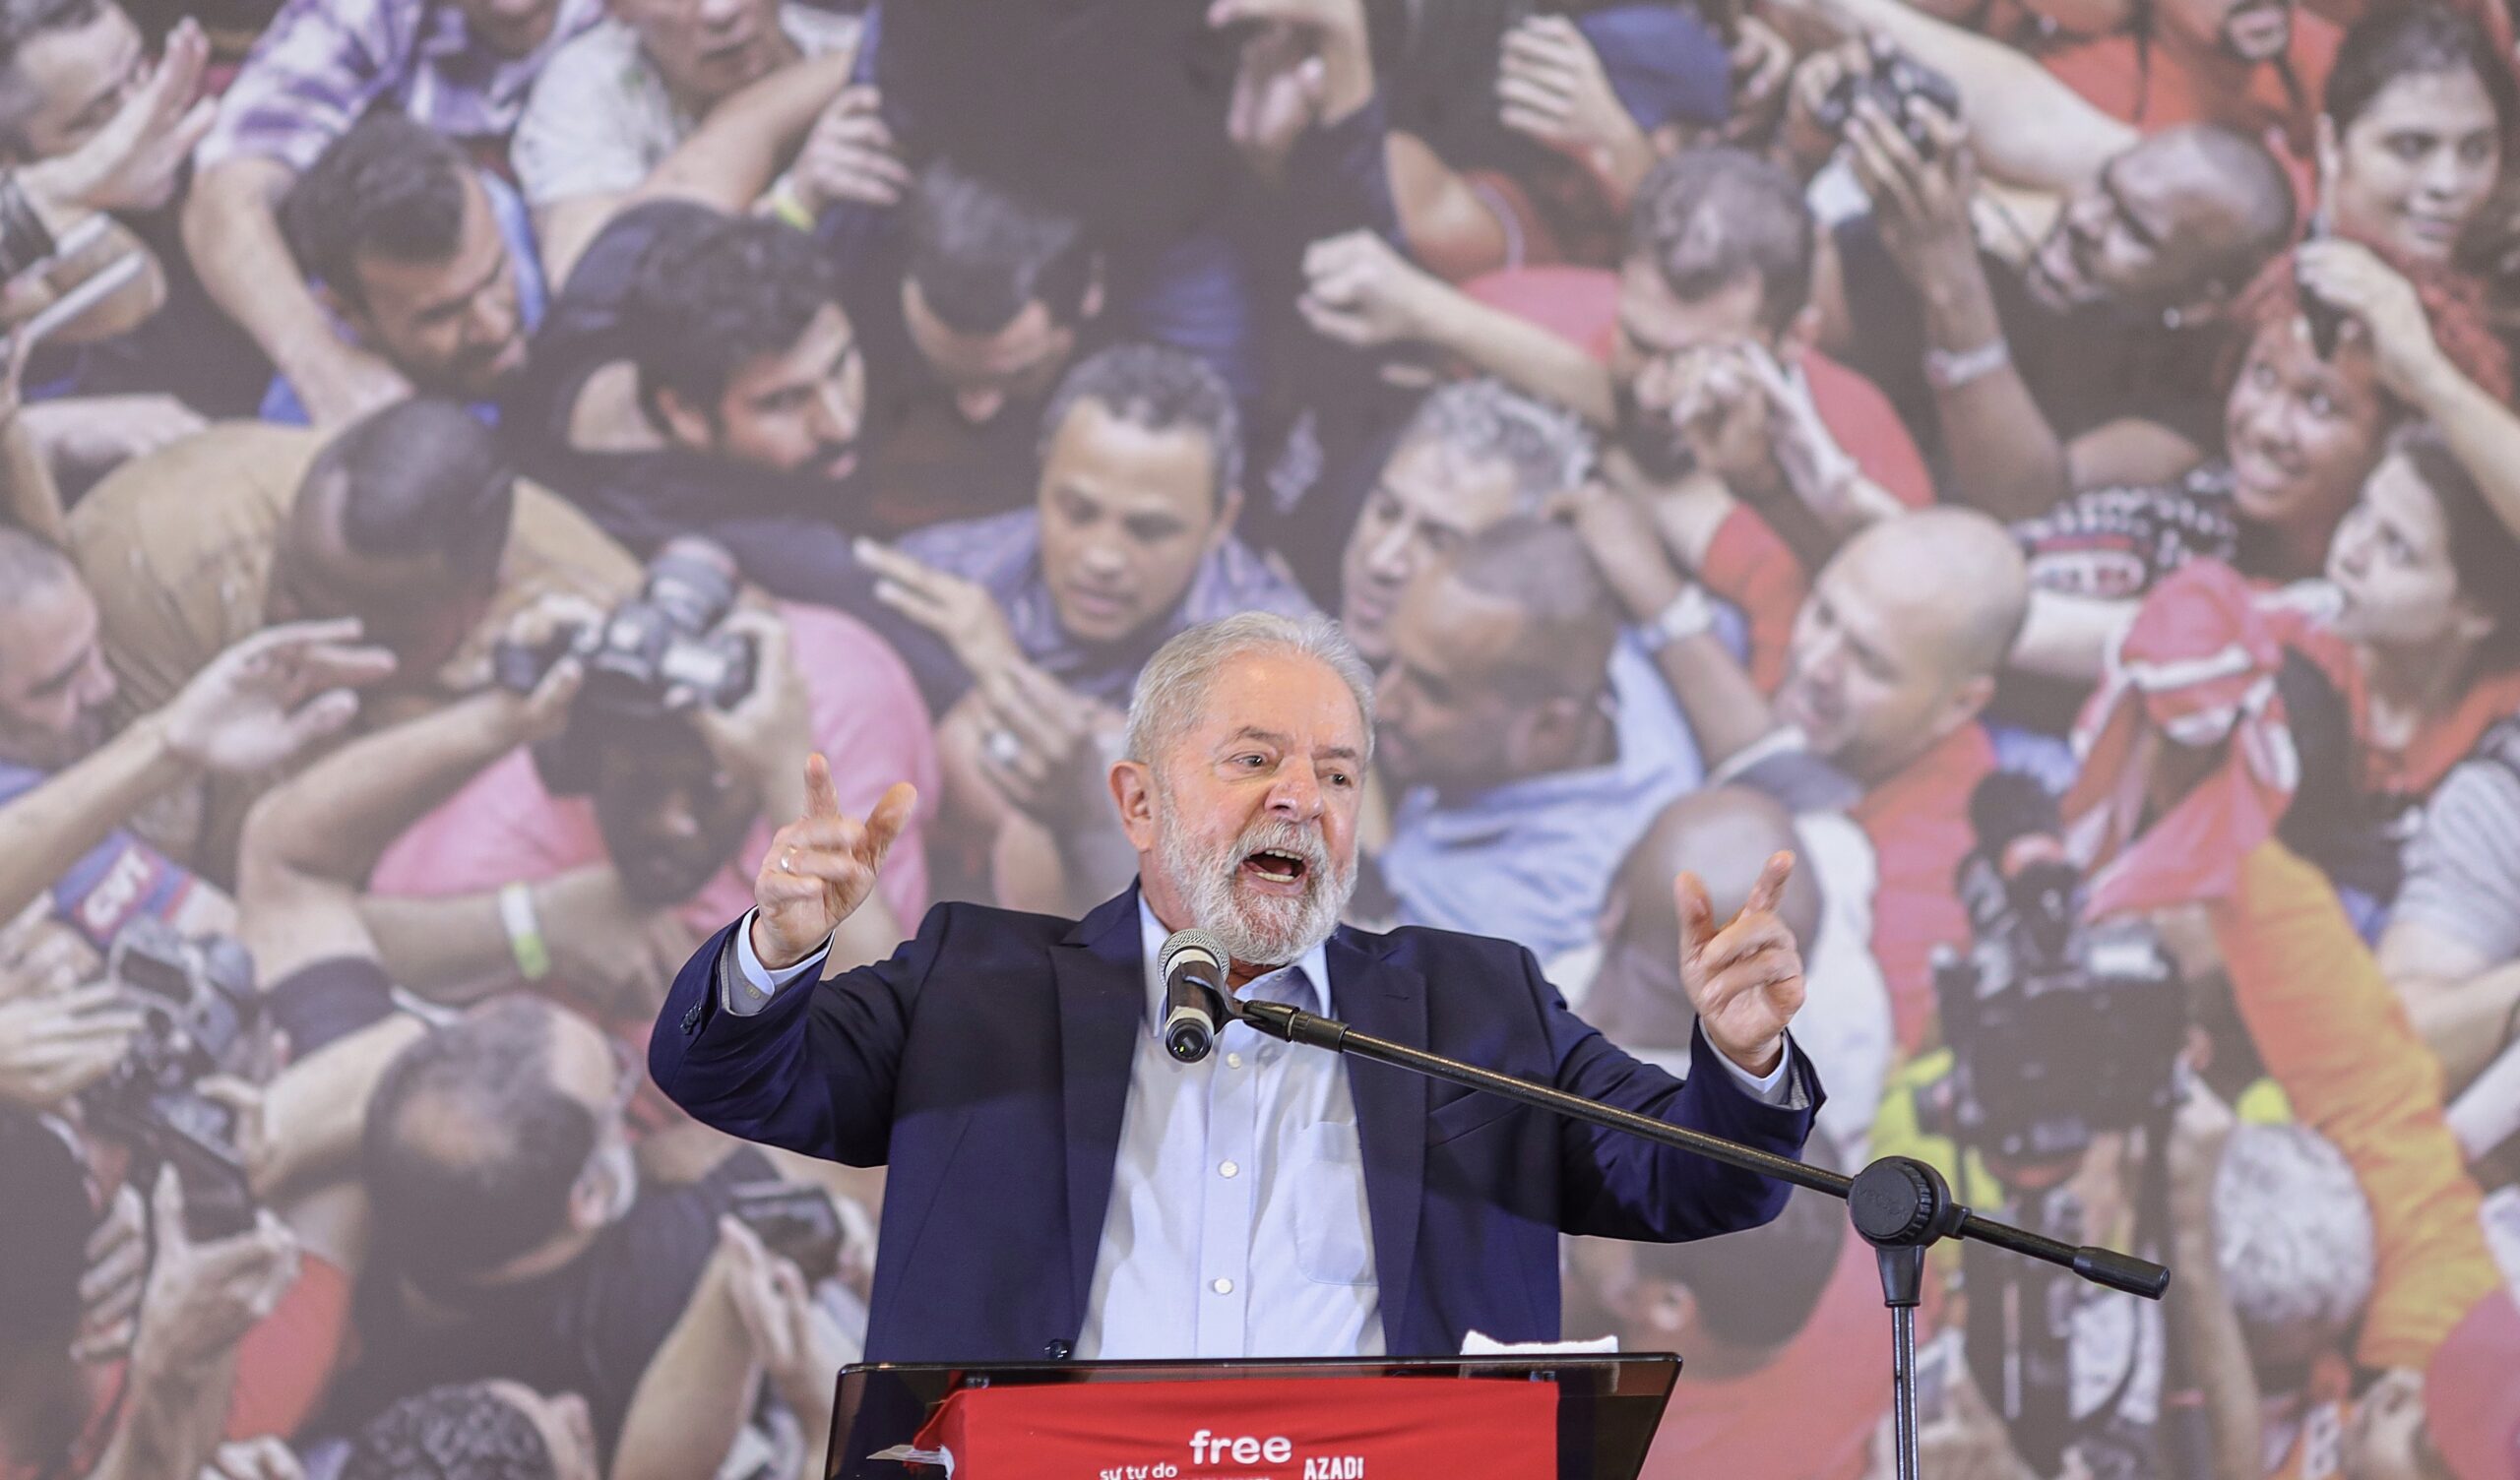 Coletiva Lula